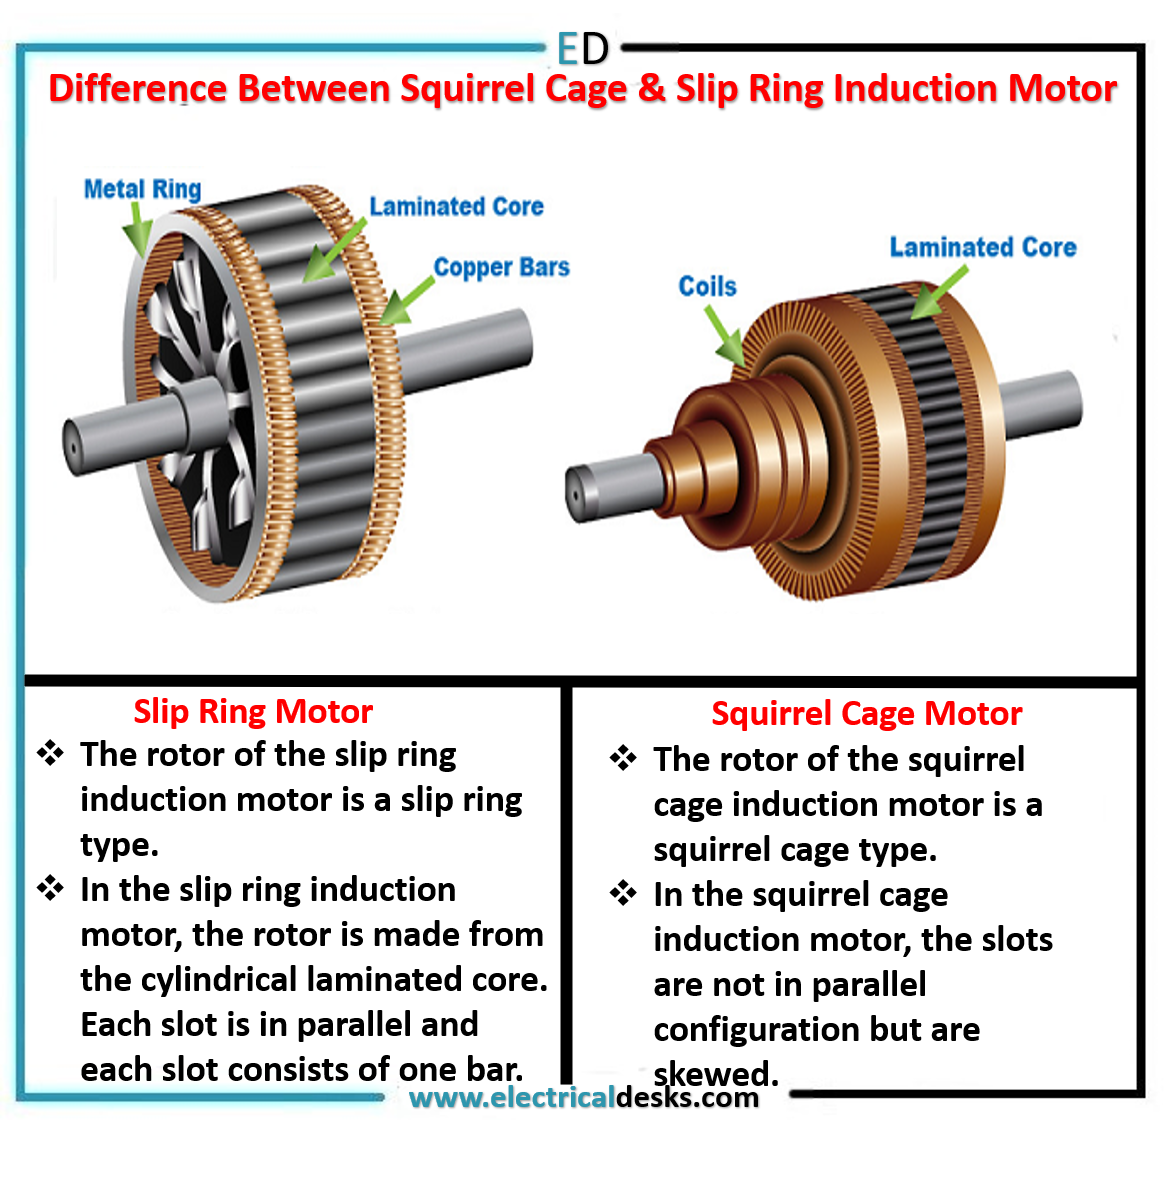 slip ring induction motor EXPLAINED - YouTube